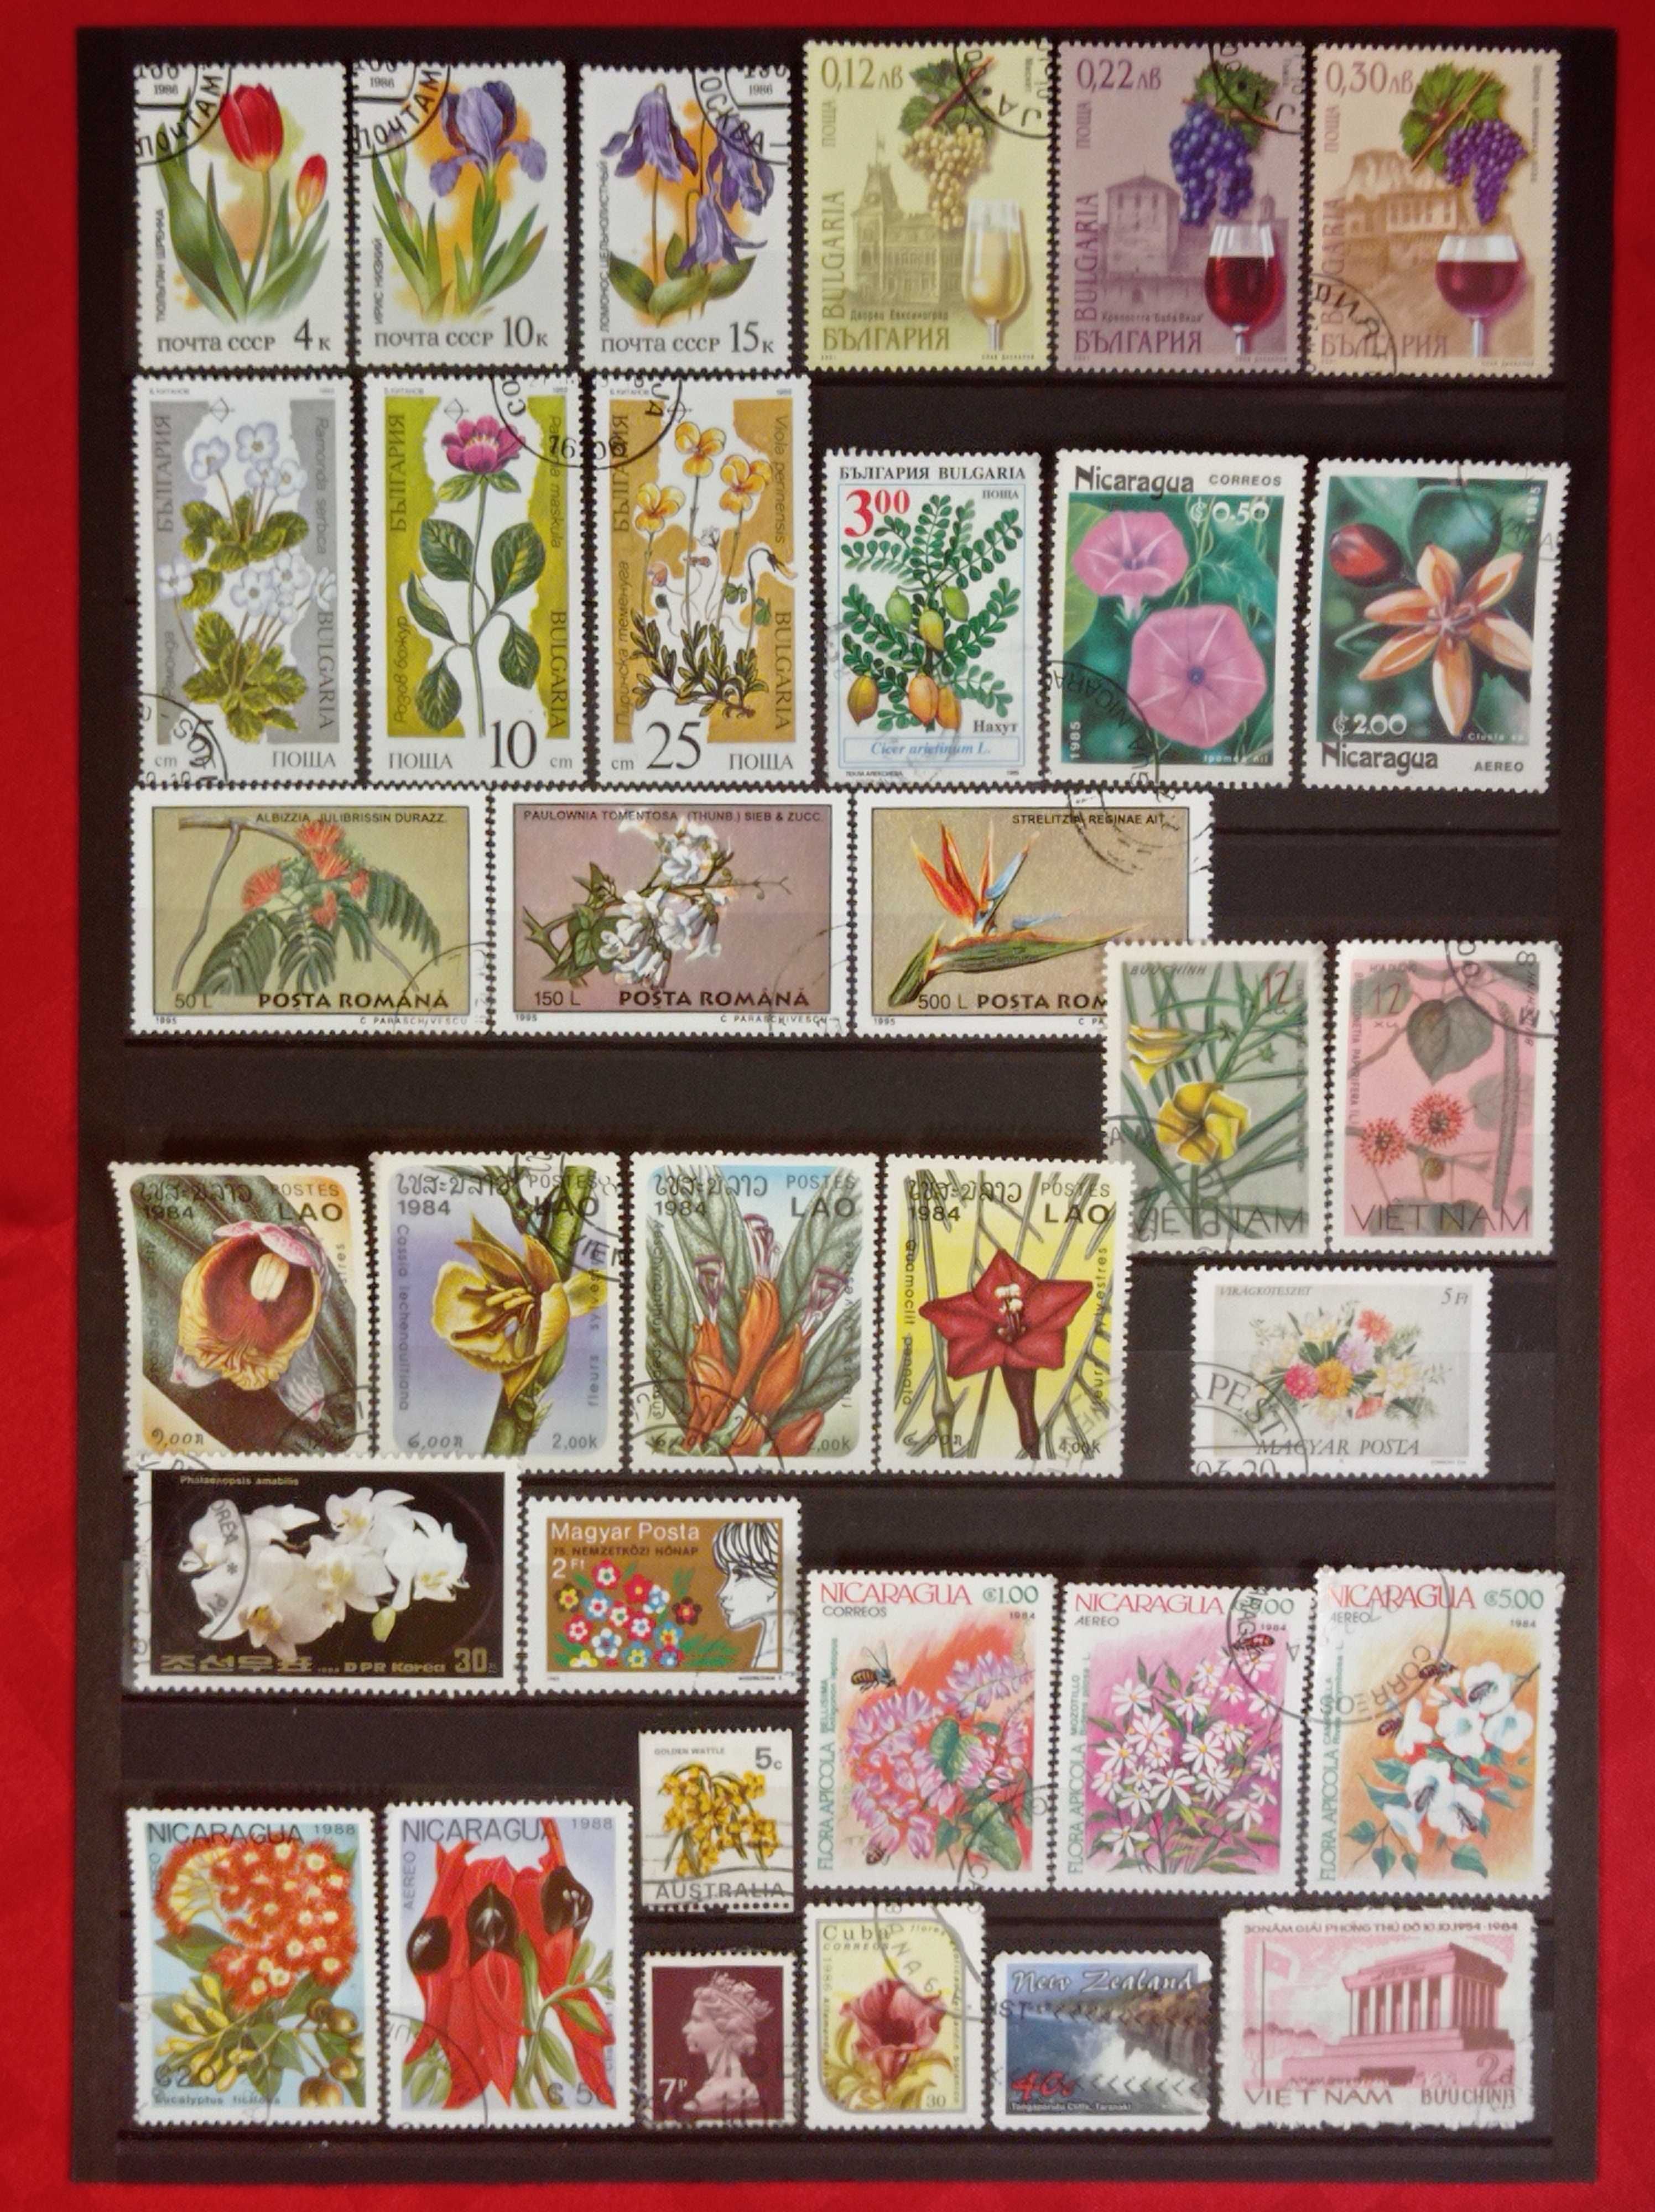 Пощенски марки тема ”Растения”.